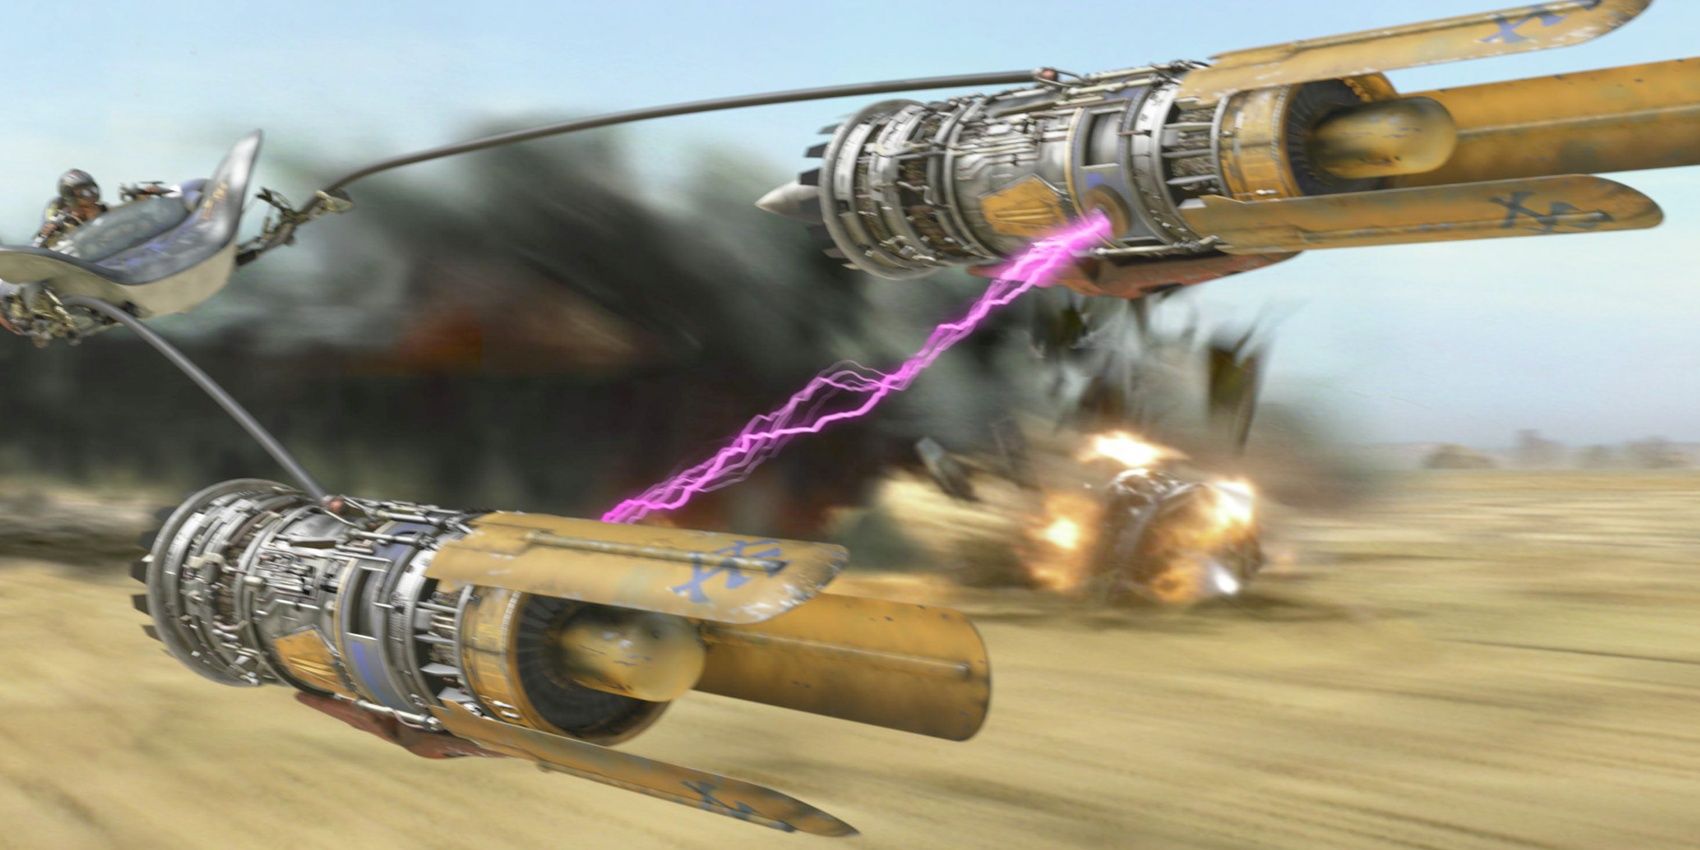 Star Wars Episode 1: Racer Anakin's Podracer speeds into the final round.